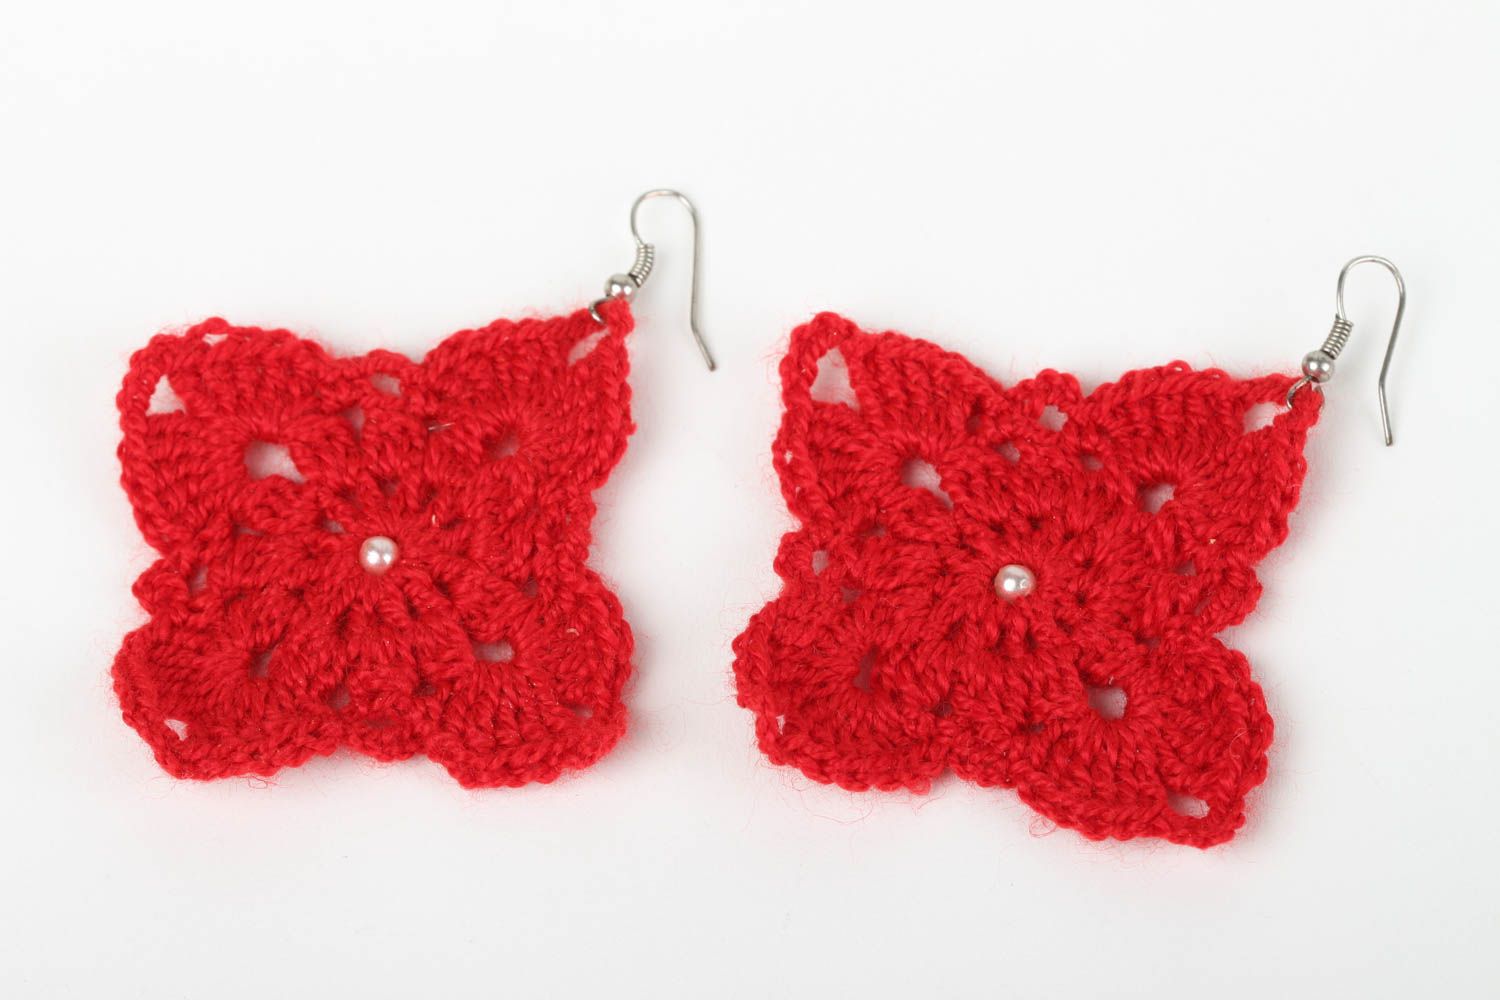 Handmade crochet earrings flower earrings costume jewelry designs gift ideas photo 2